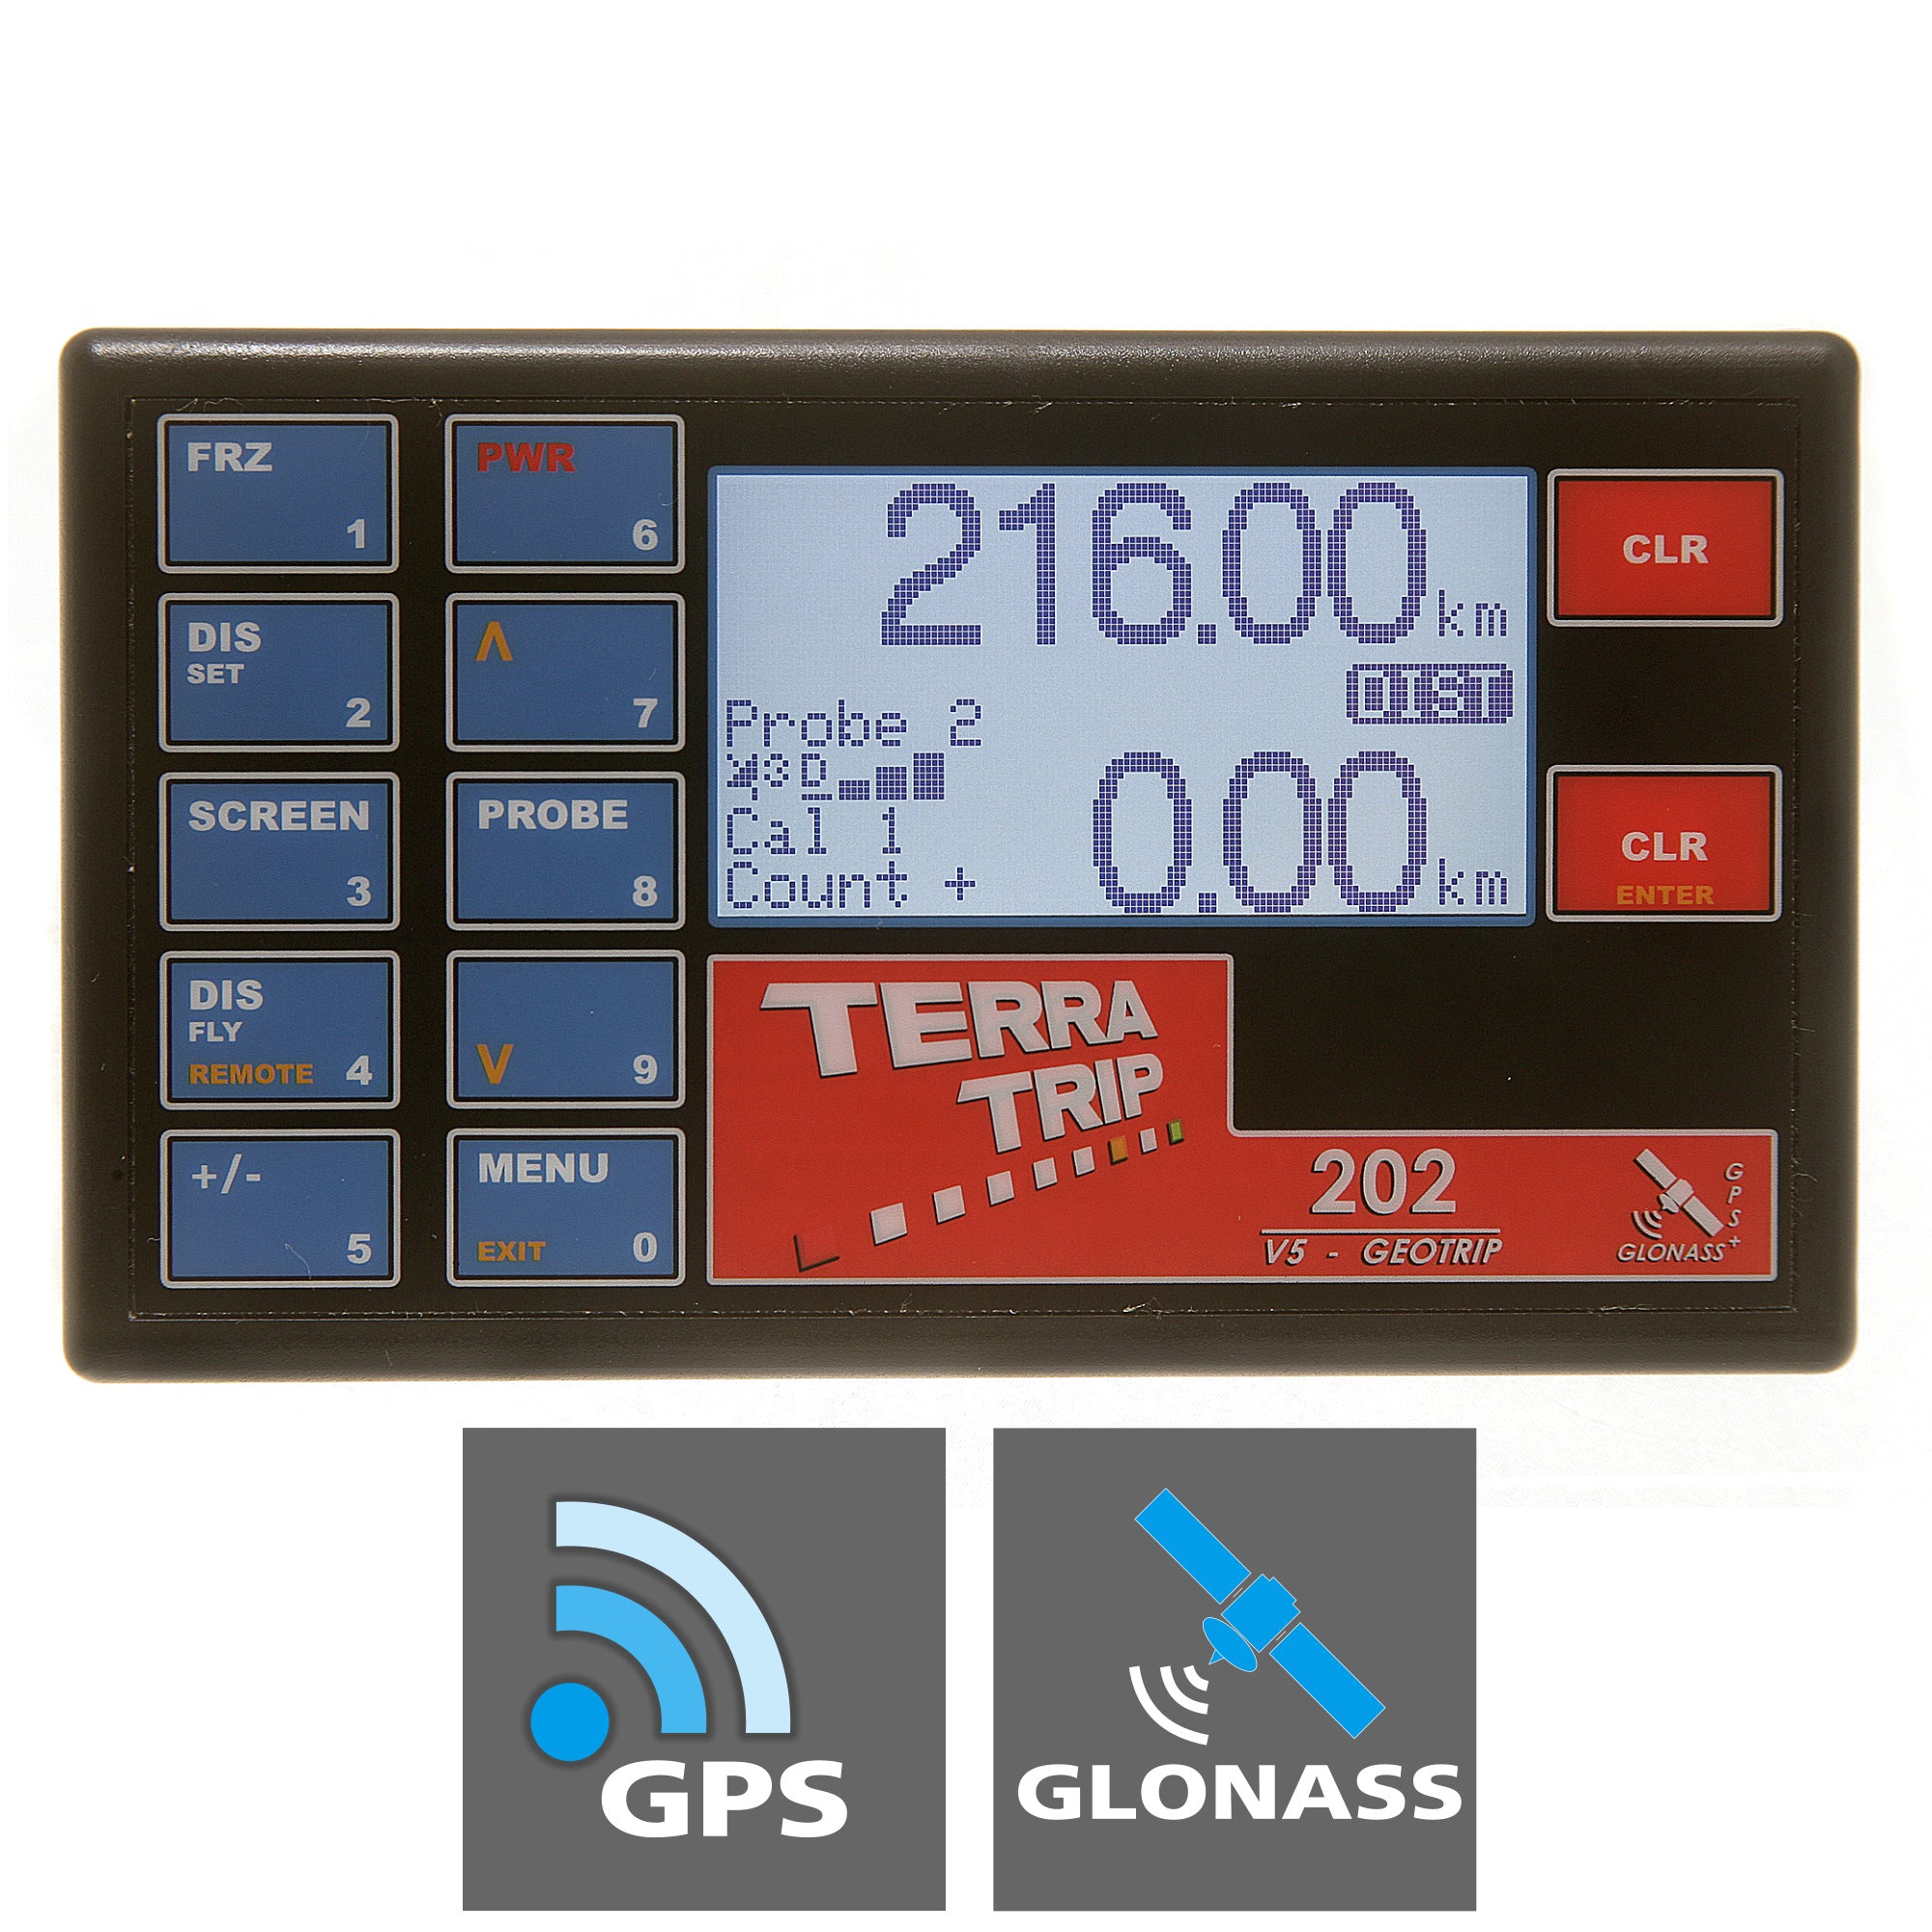 Terratrip 202 GeoTrip with GPS & GLONASS V5